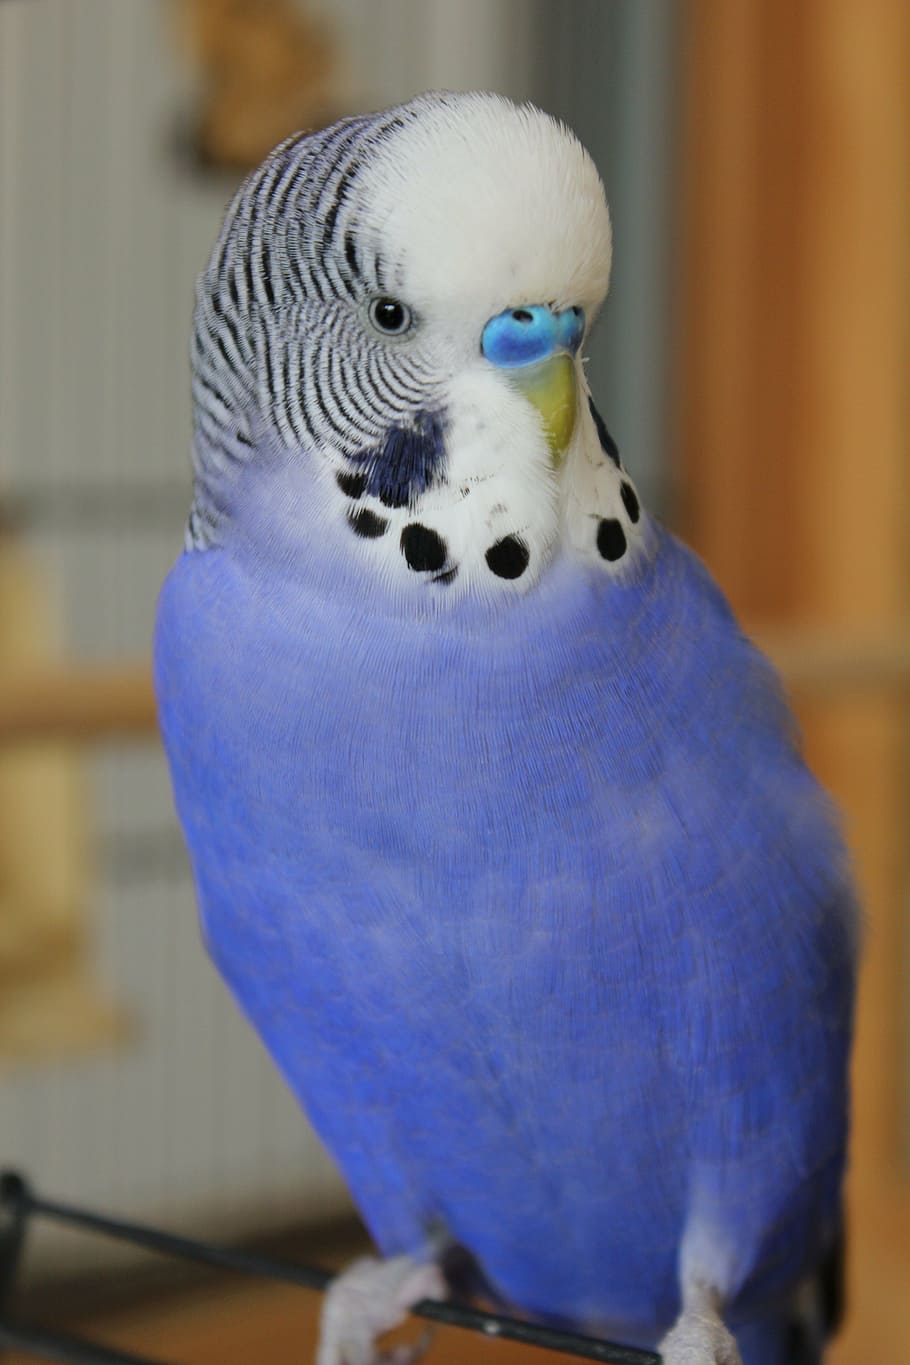 azul, branco, papagaio, periquito, animal de estimação, pássaro, plumagem, pena, bico, gorjeio